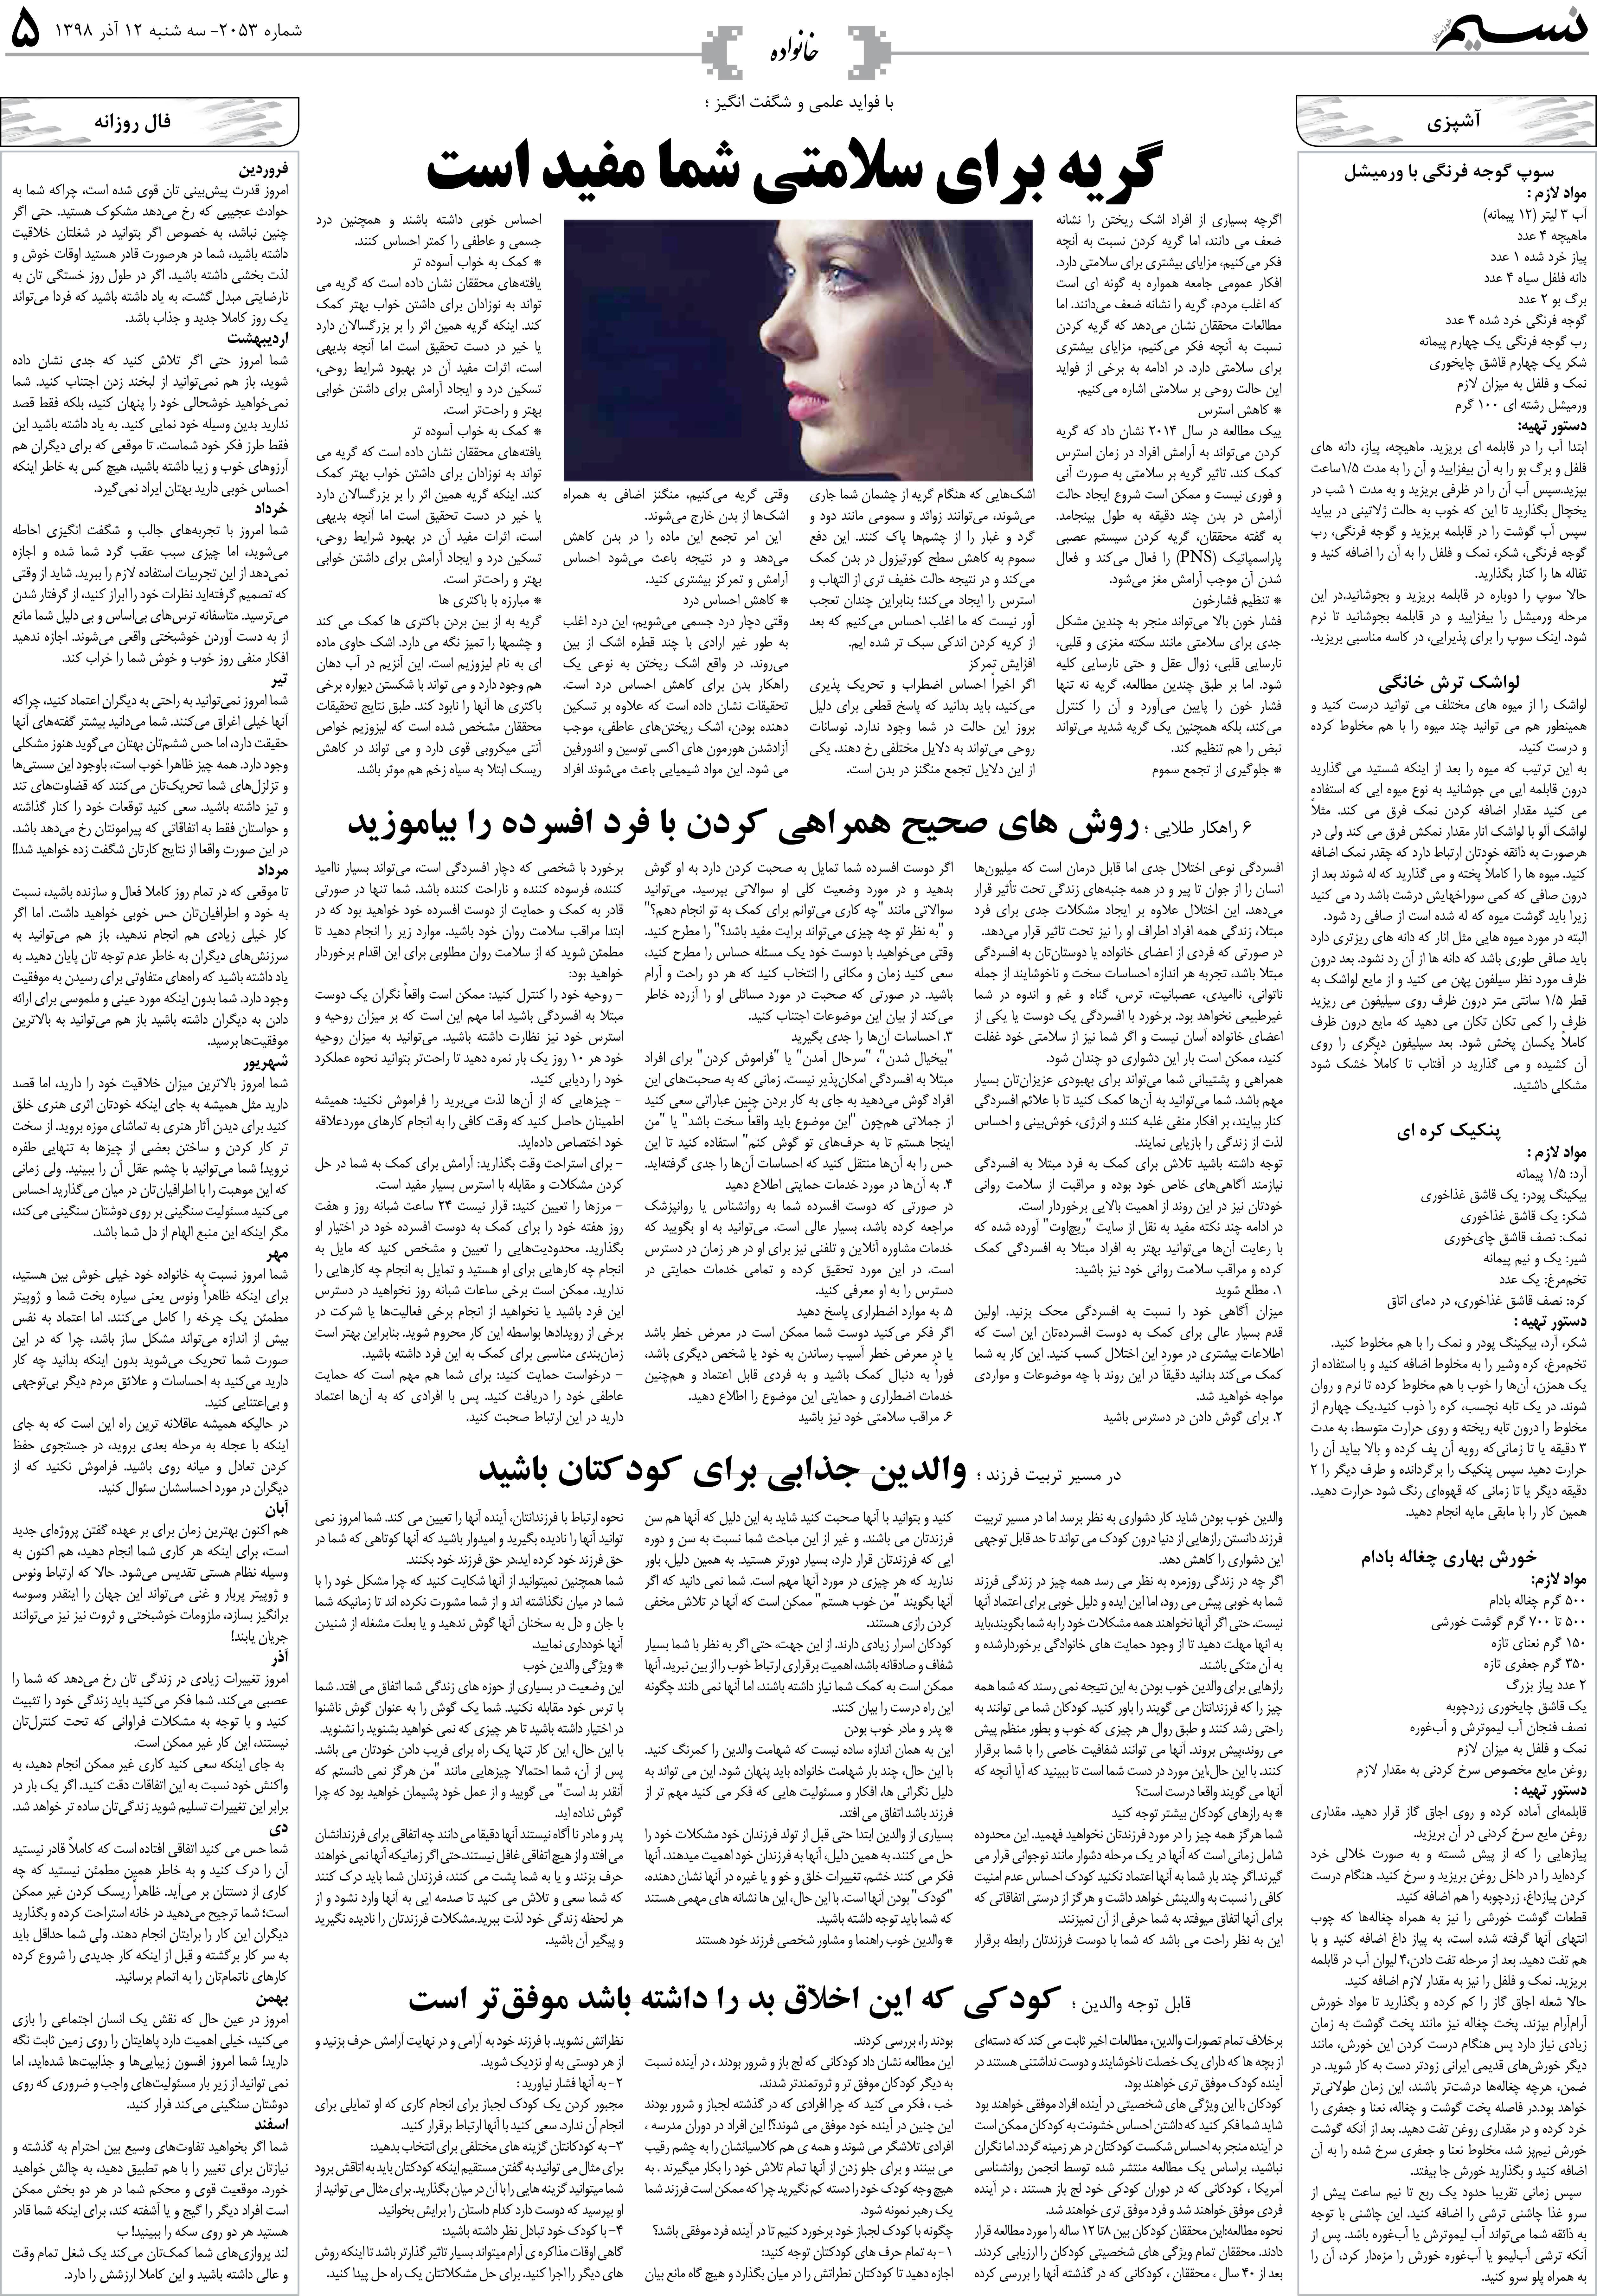 صفحه خانواده روزنامه نسیم شماره 2053